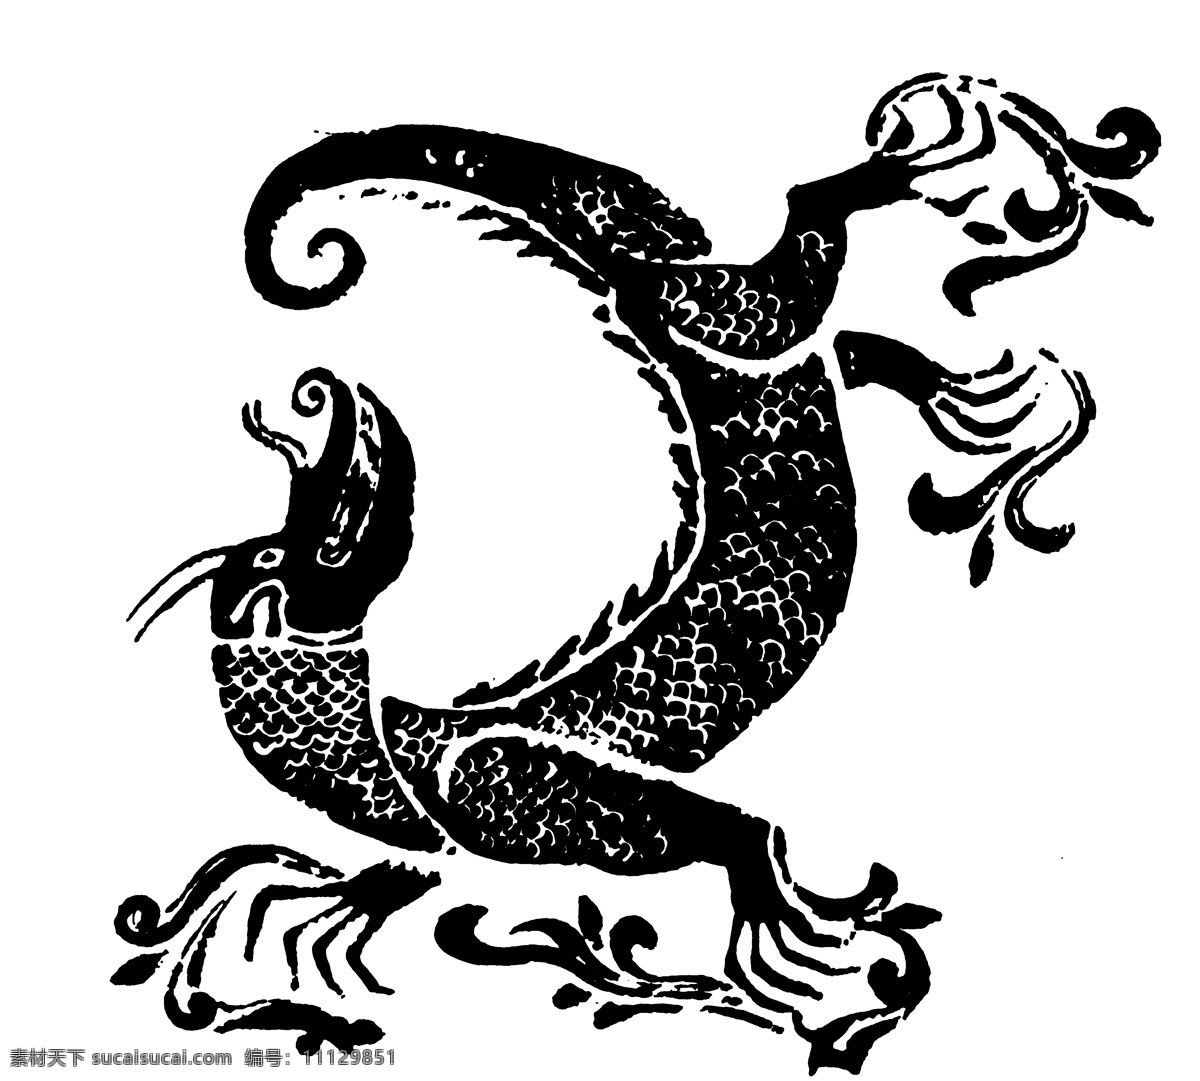 龙凤图案 两宋时代图案 中国 传统 图案 中国传统图案 设计素材 龙凤图纹 装饰图案 书画美术 白色